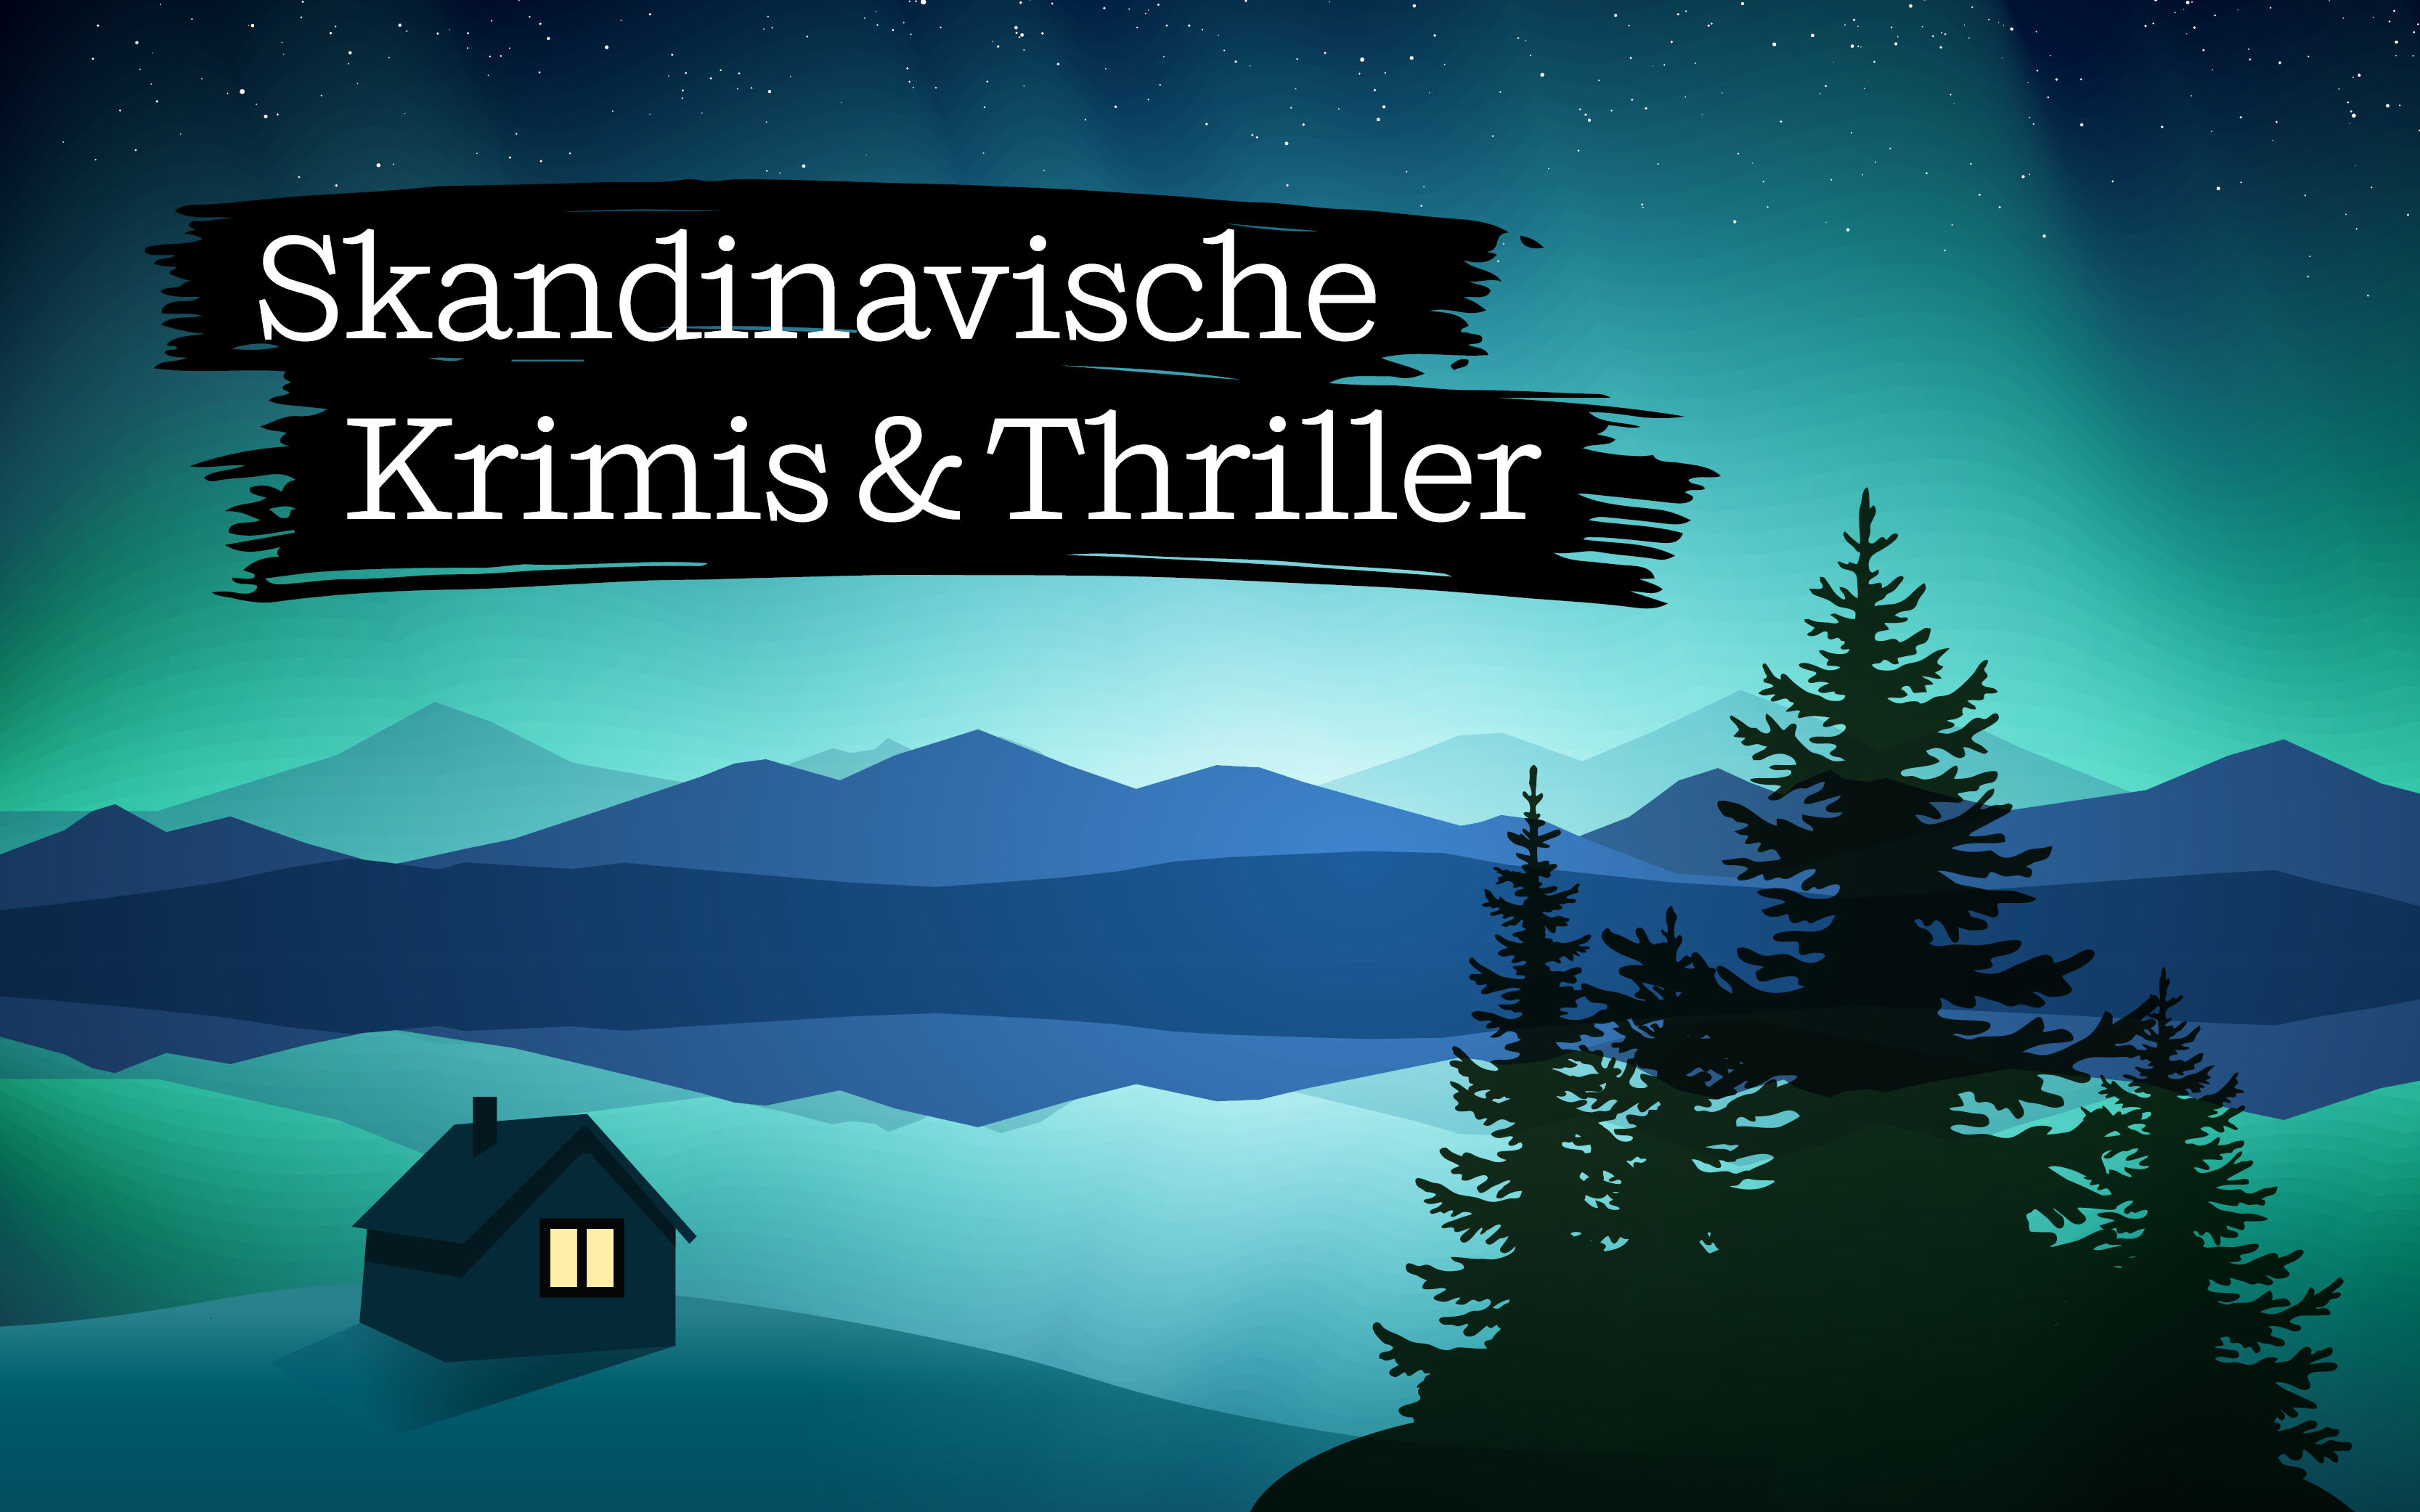 Skandinavische Krimis & Thriller - unsere Buchtipps